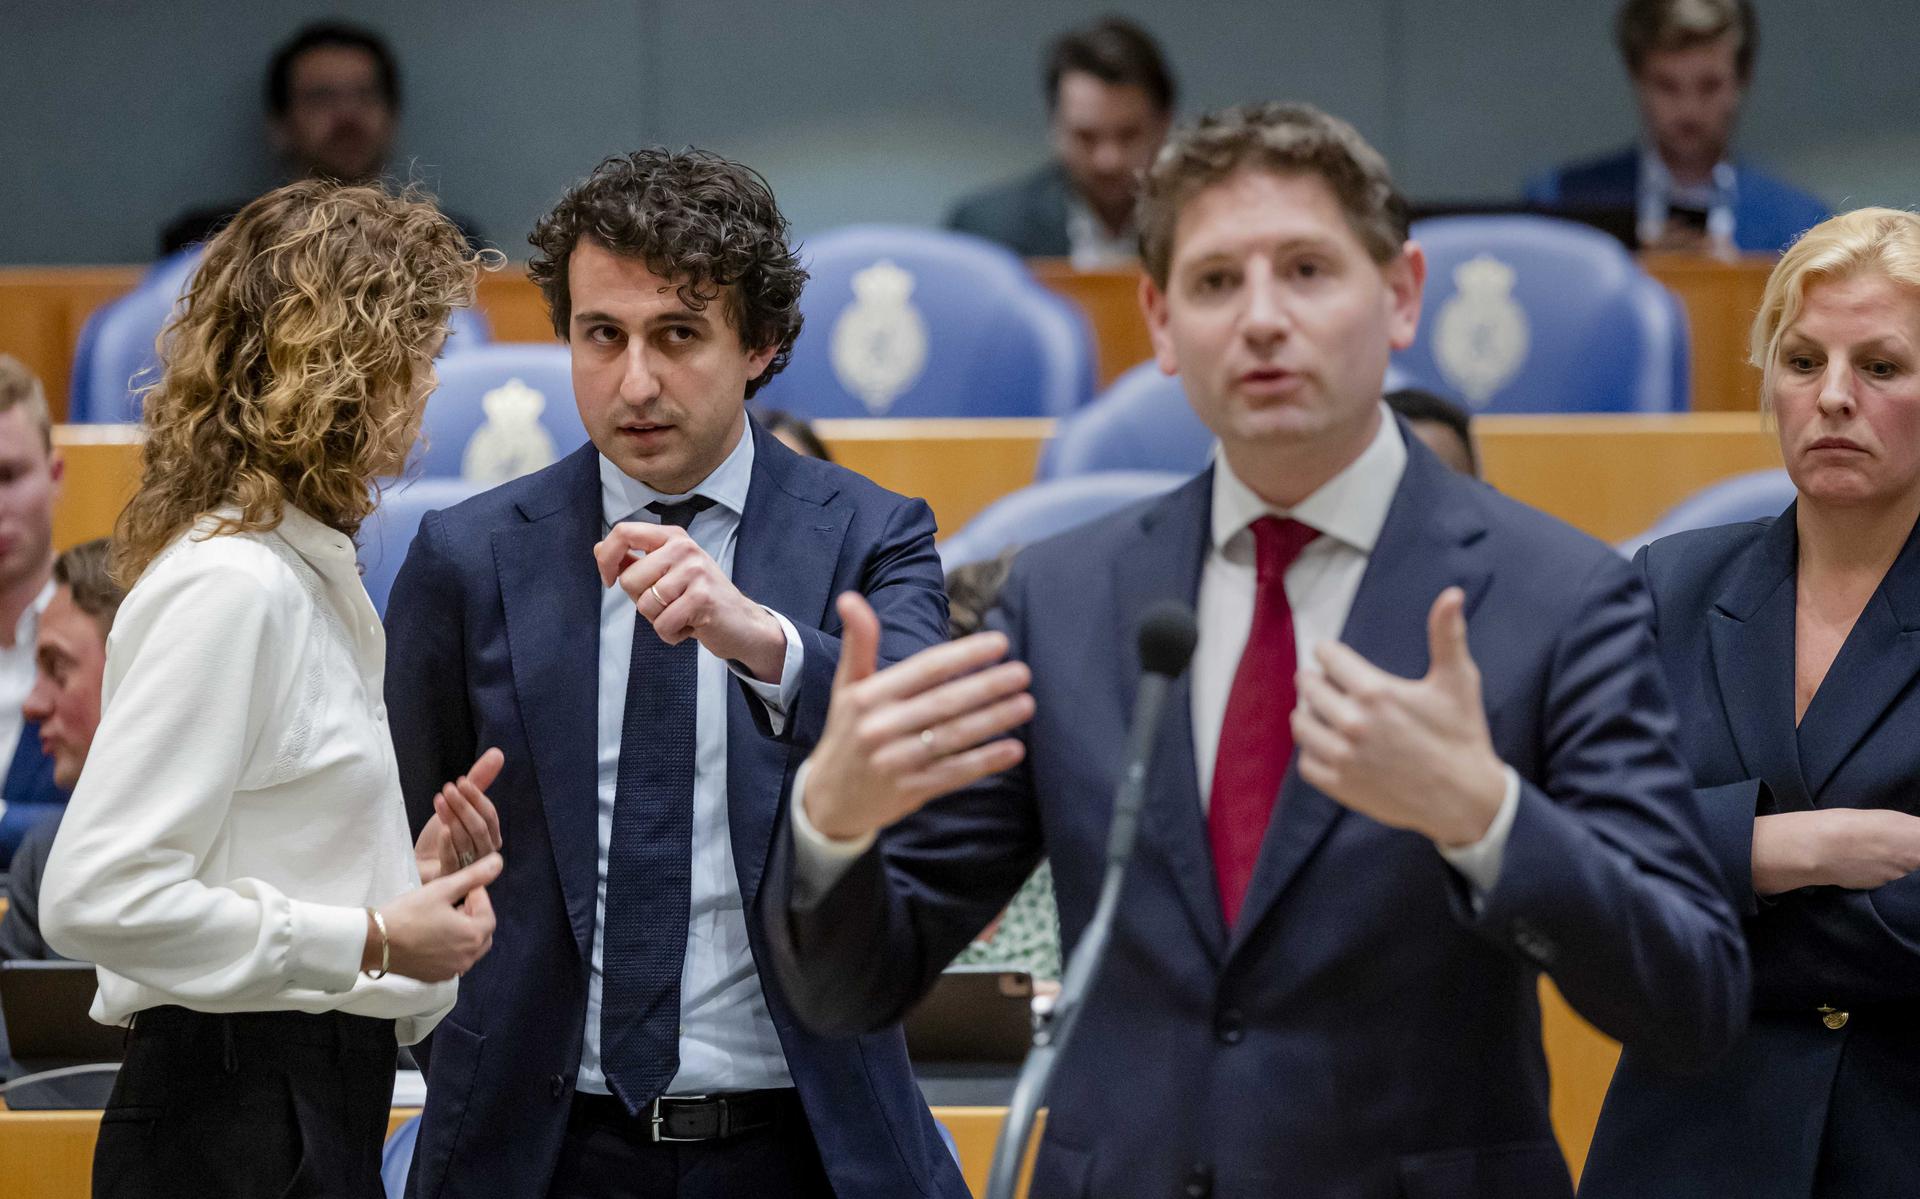 Sophie Hermans (VVD), Jesse Klaver (GroenLinks), Jan Paternotte (D66) en Attje Kuiken (PvdA) tijdens het debat in de Tweede Kamer over de uitslag van de verkiezingen voor de Provinciale Staten. ANP SEM VAN DER WAL